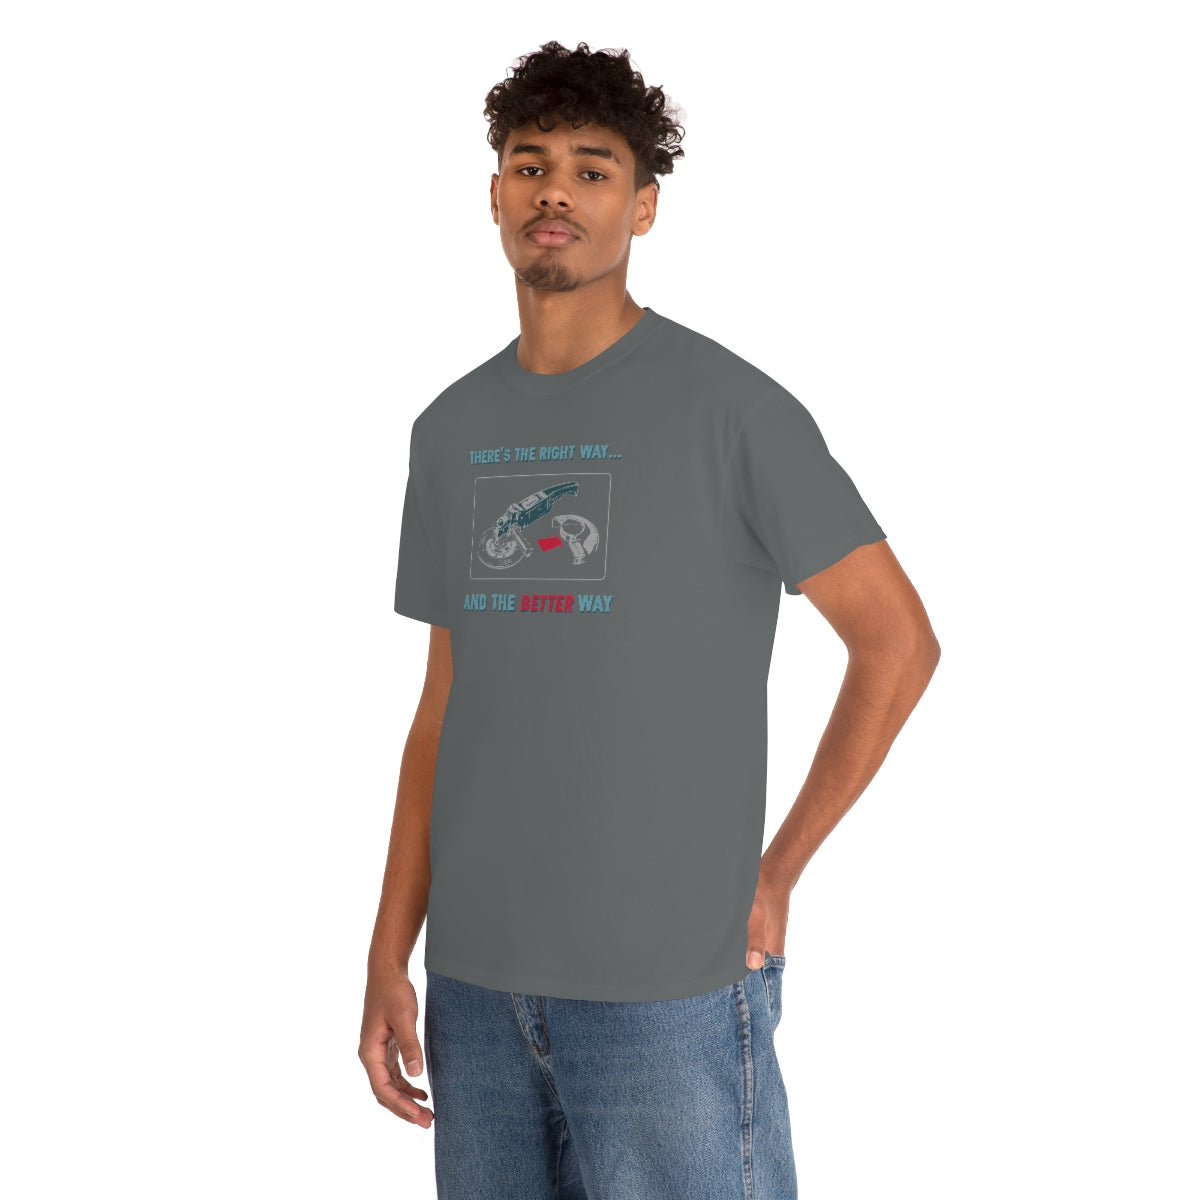 The Better Way T-Shirt (3XL+)